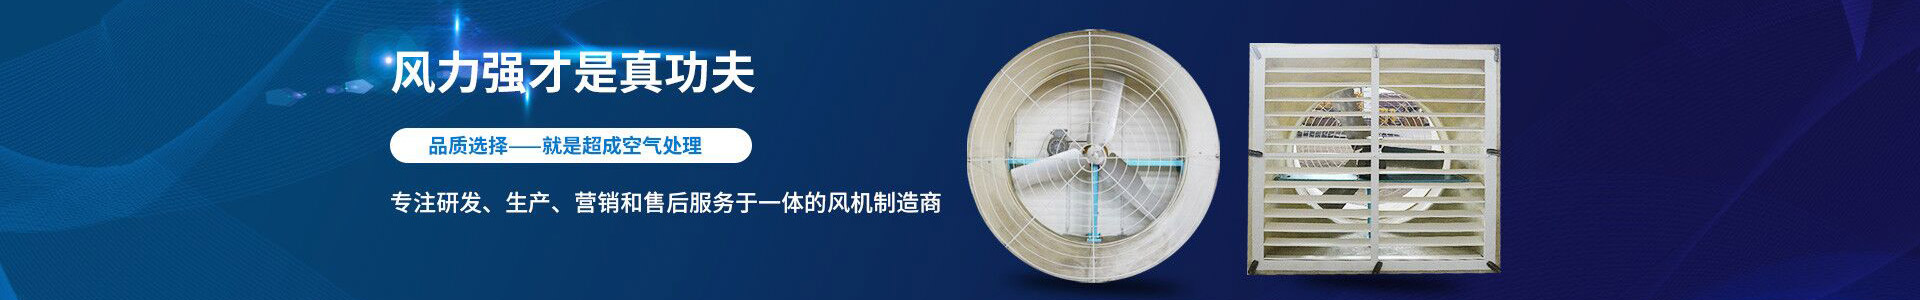 风机-江阴市超成空气处理设备有限公司